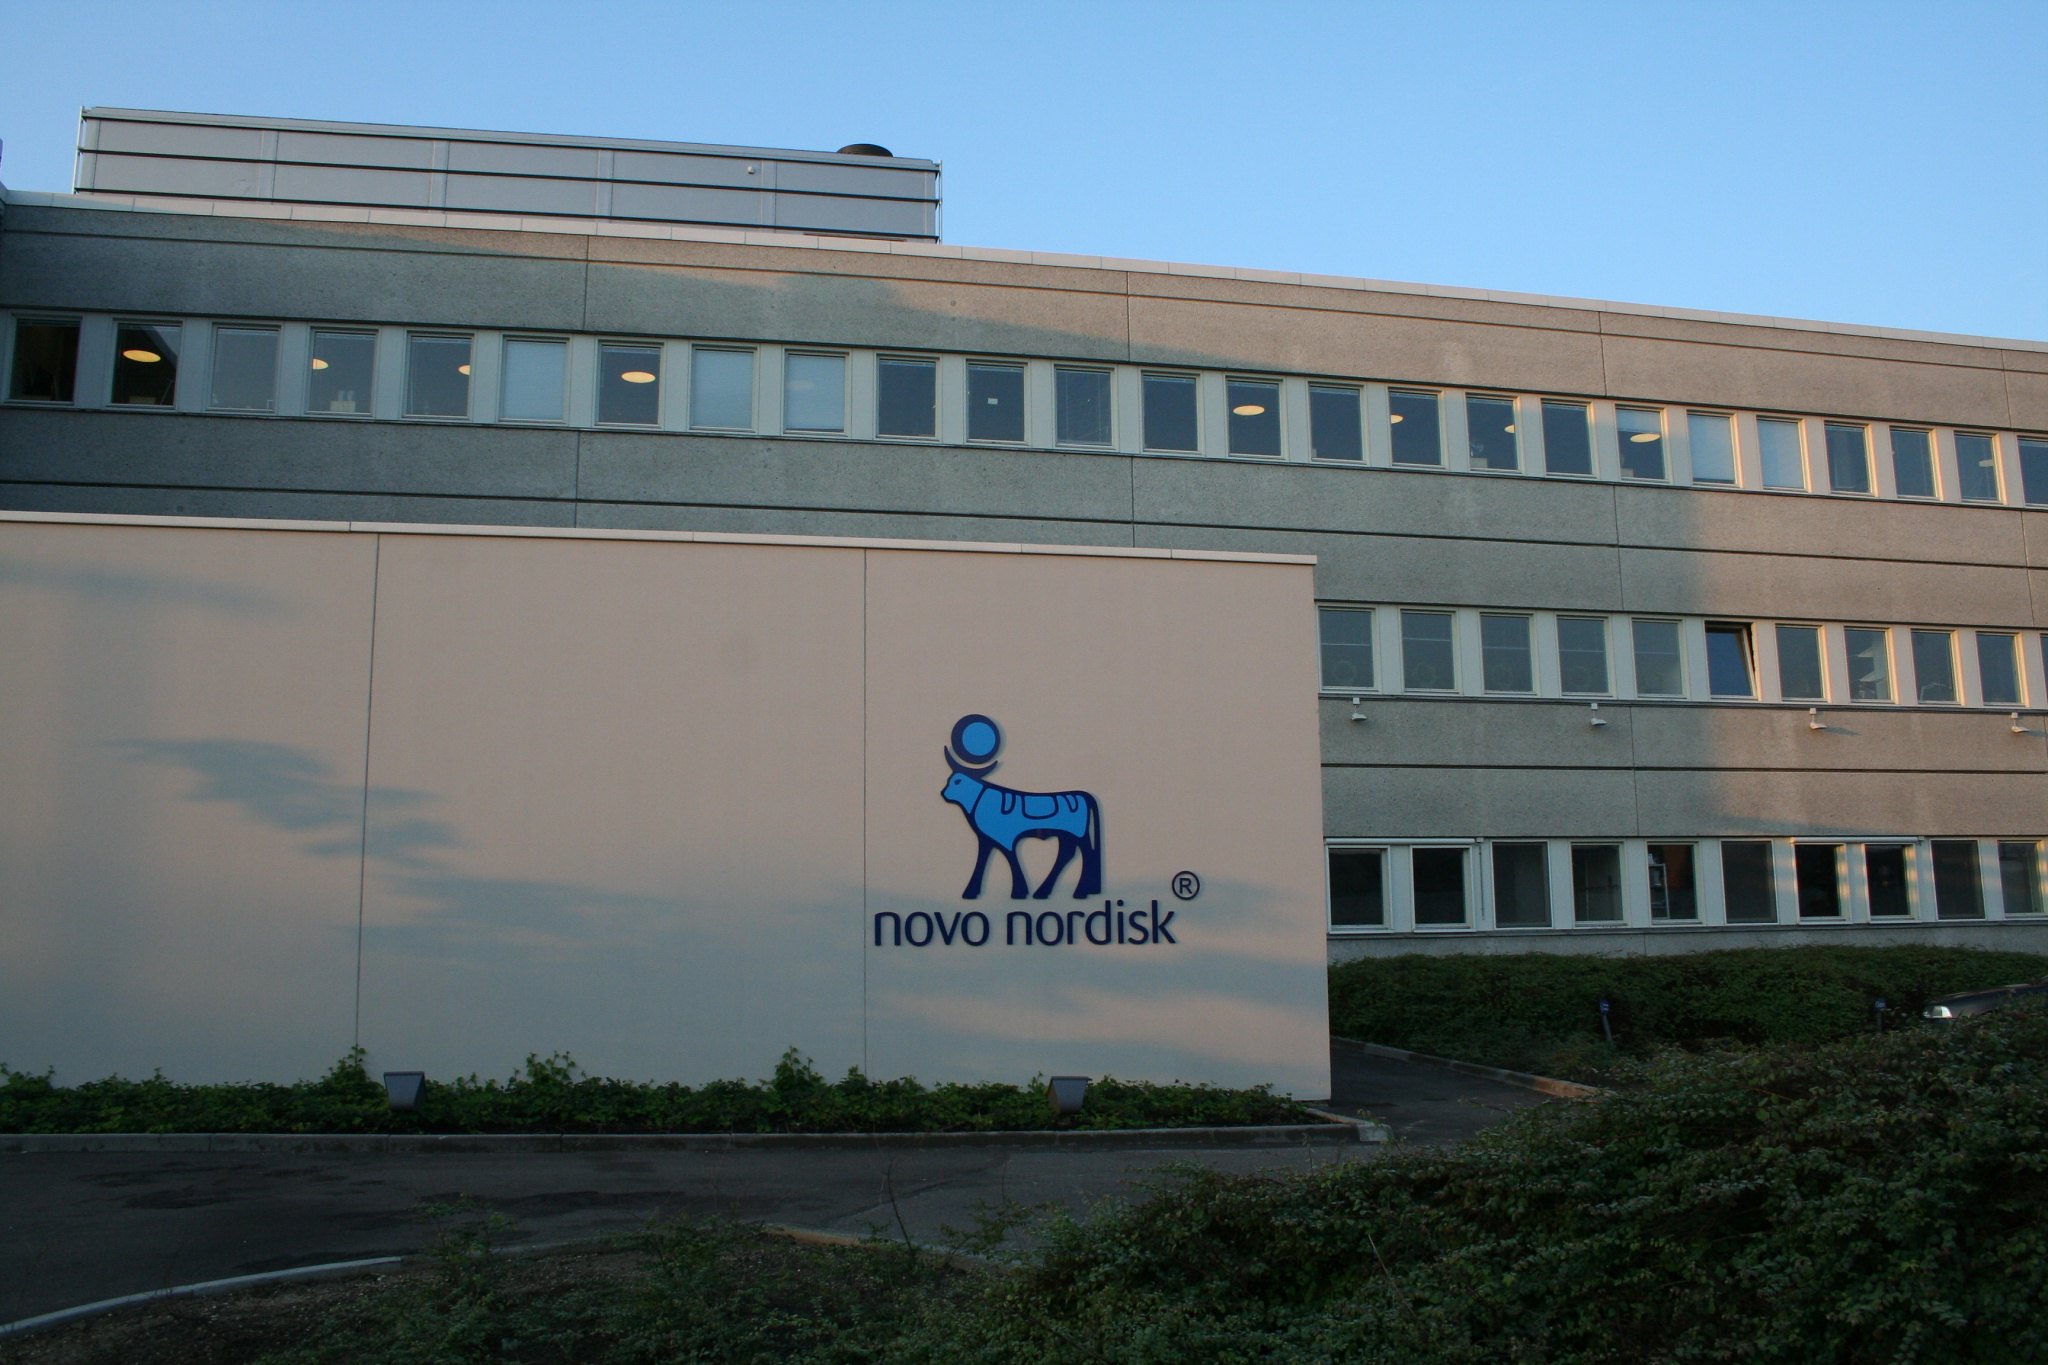 The Novo Nordisk headquarters at Bagsværd, 2006. Image courtesy of Siebhur (Flickr).